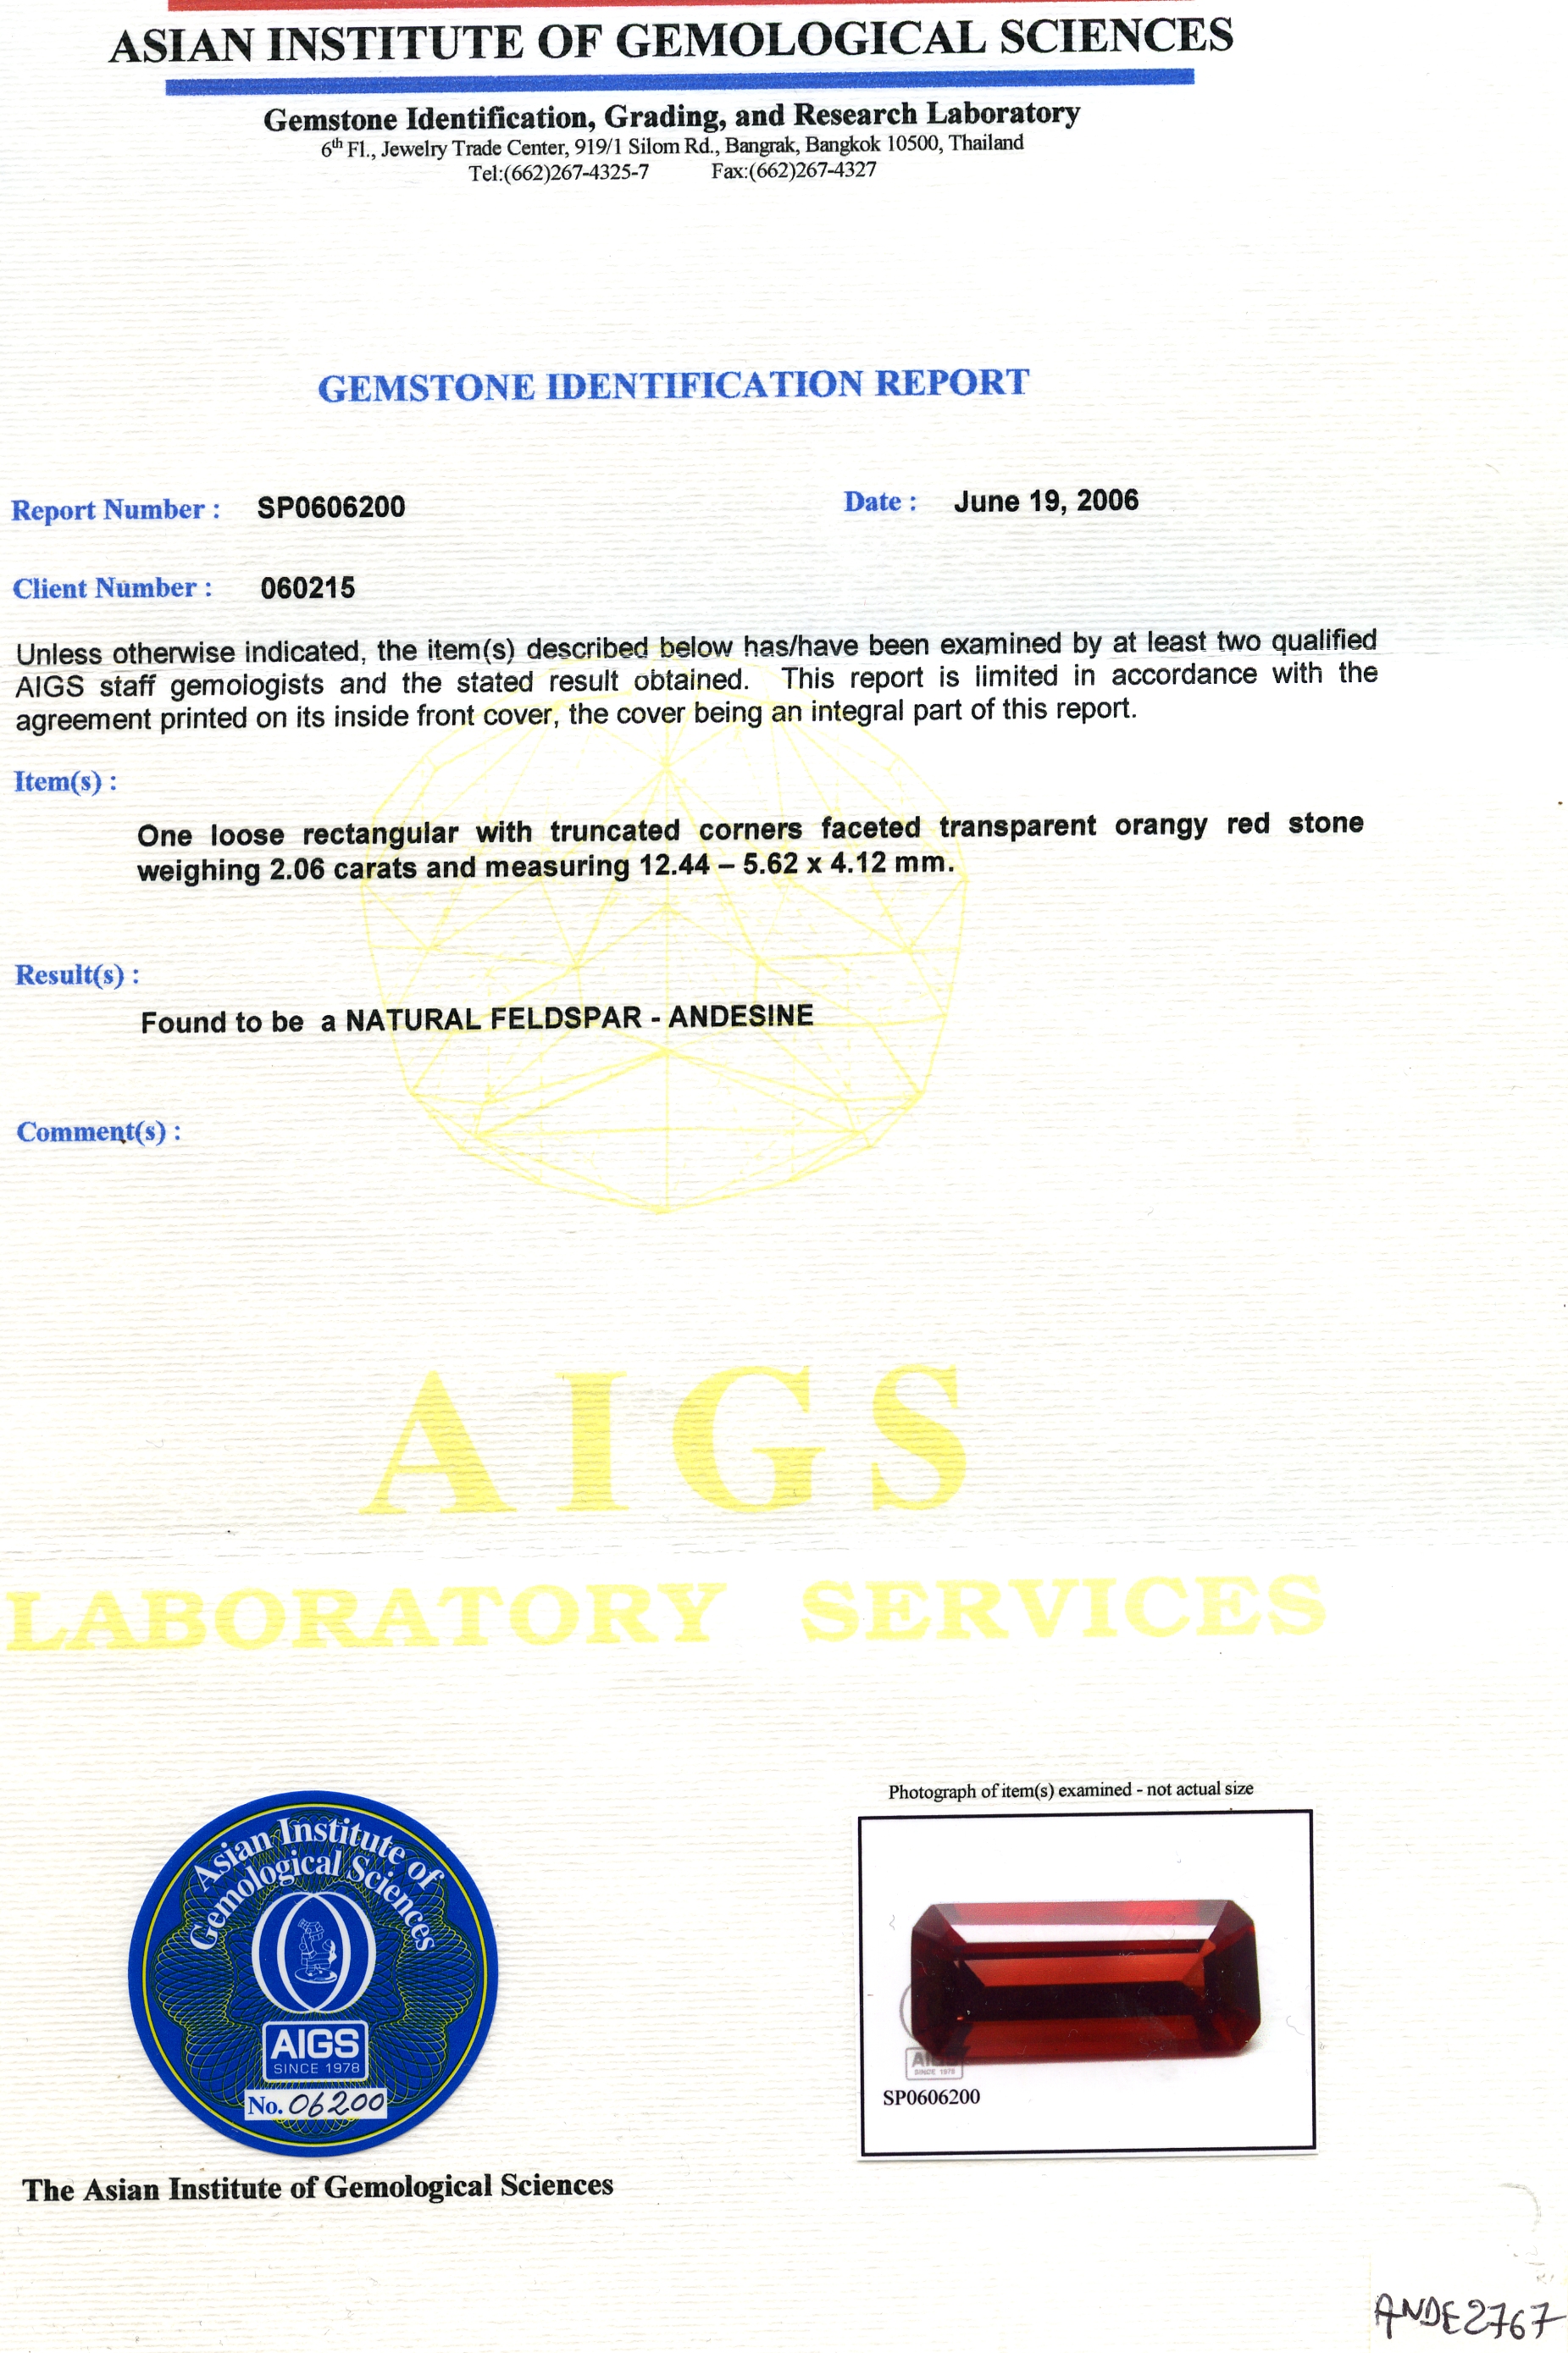 Certificat de laboratoire AIGS